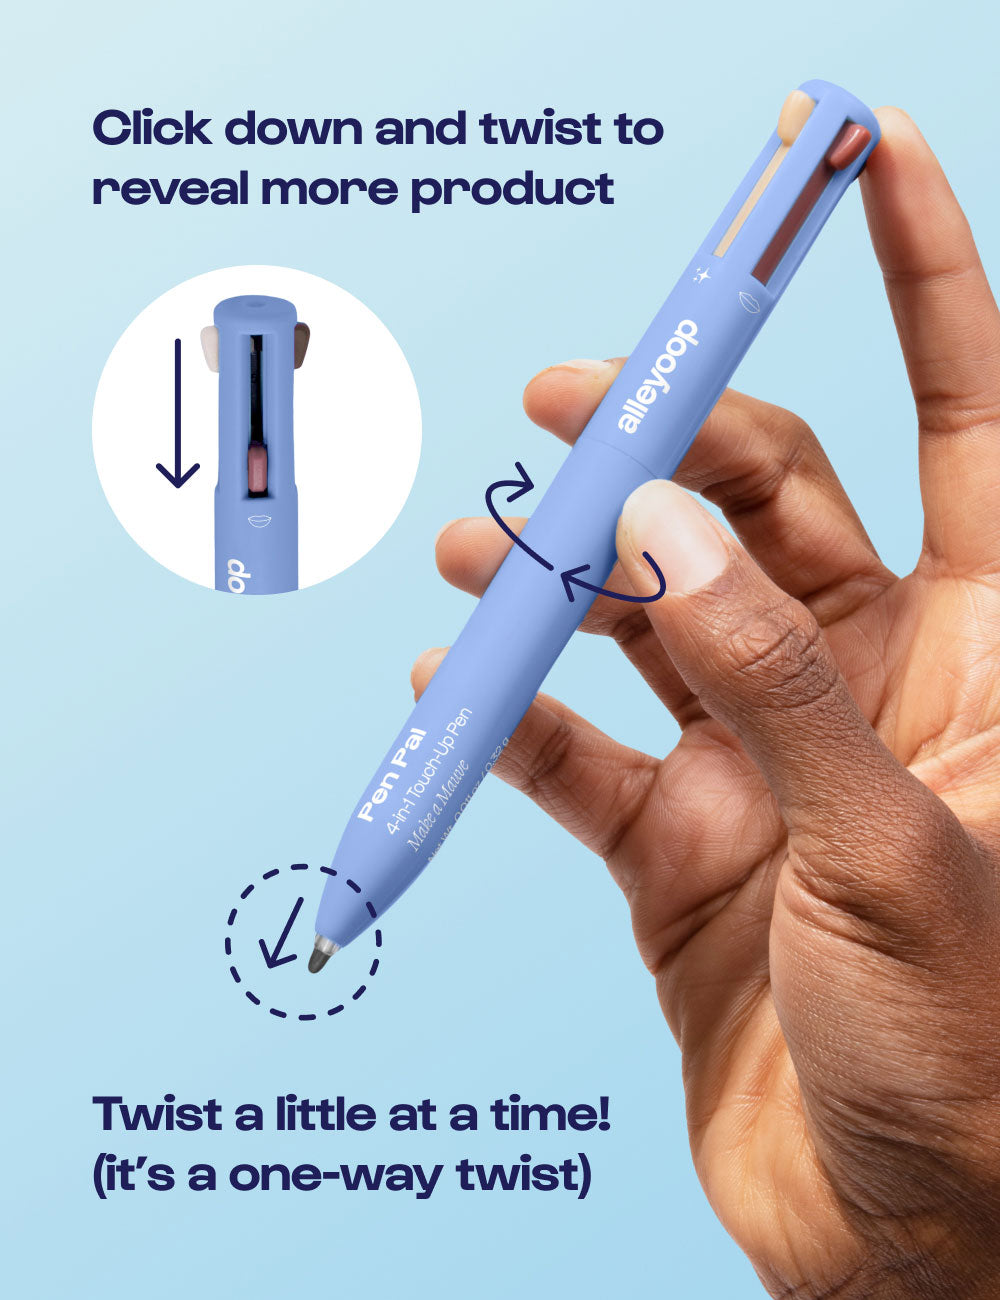 Multi-Tasker Pen/Highlighter